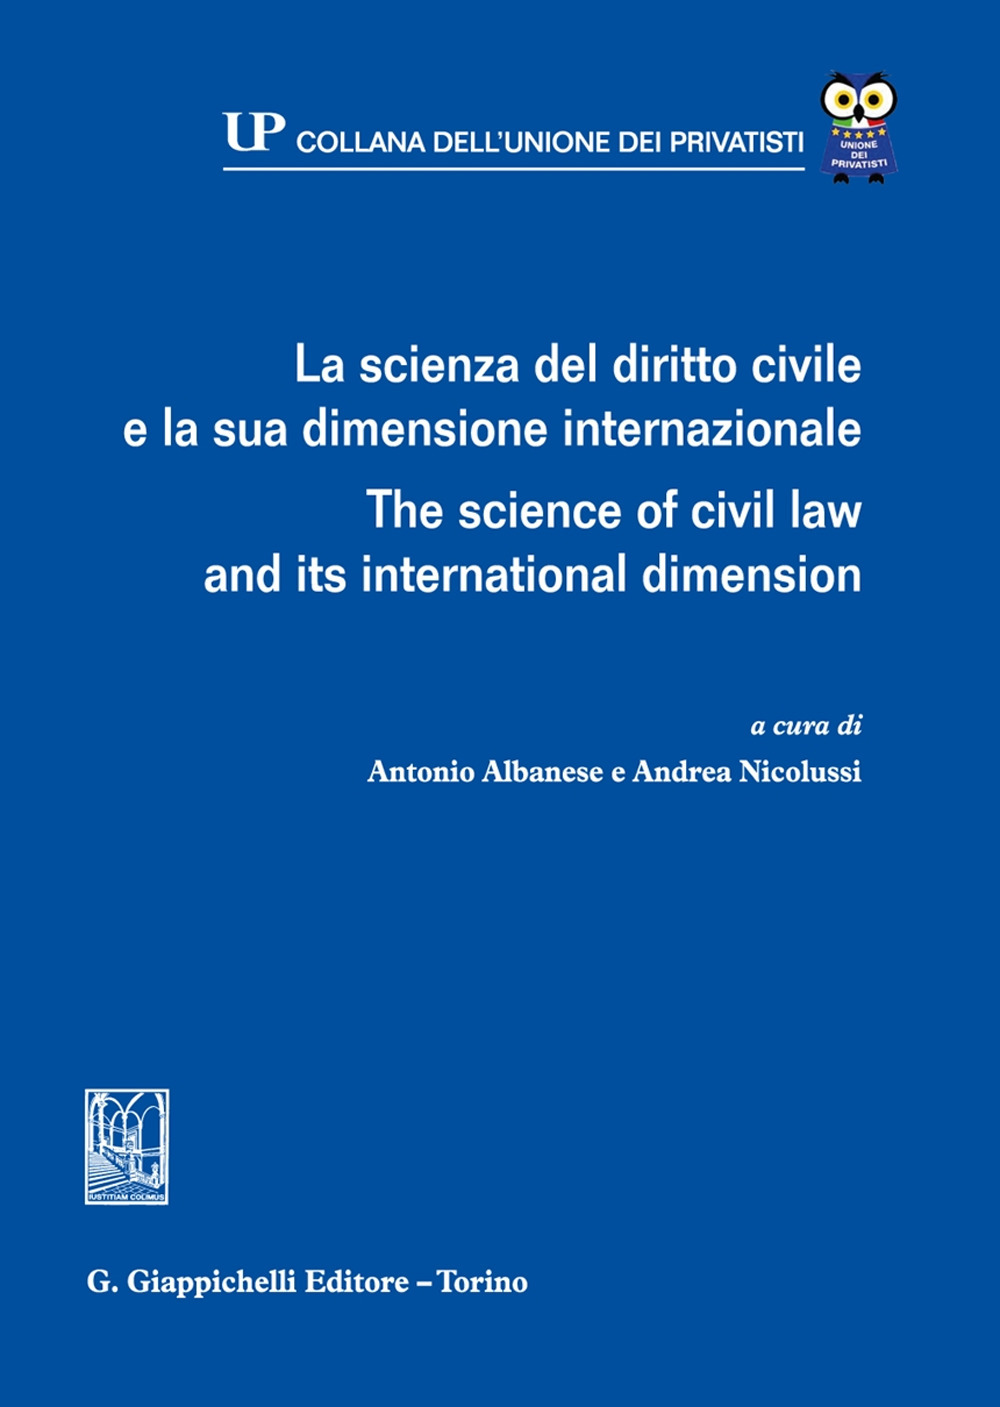 La scienza del diritto civile e la sua dimensione internazionale-The science of civil law and its international dimension